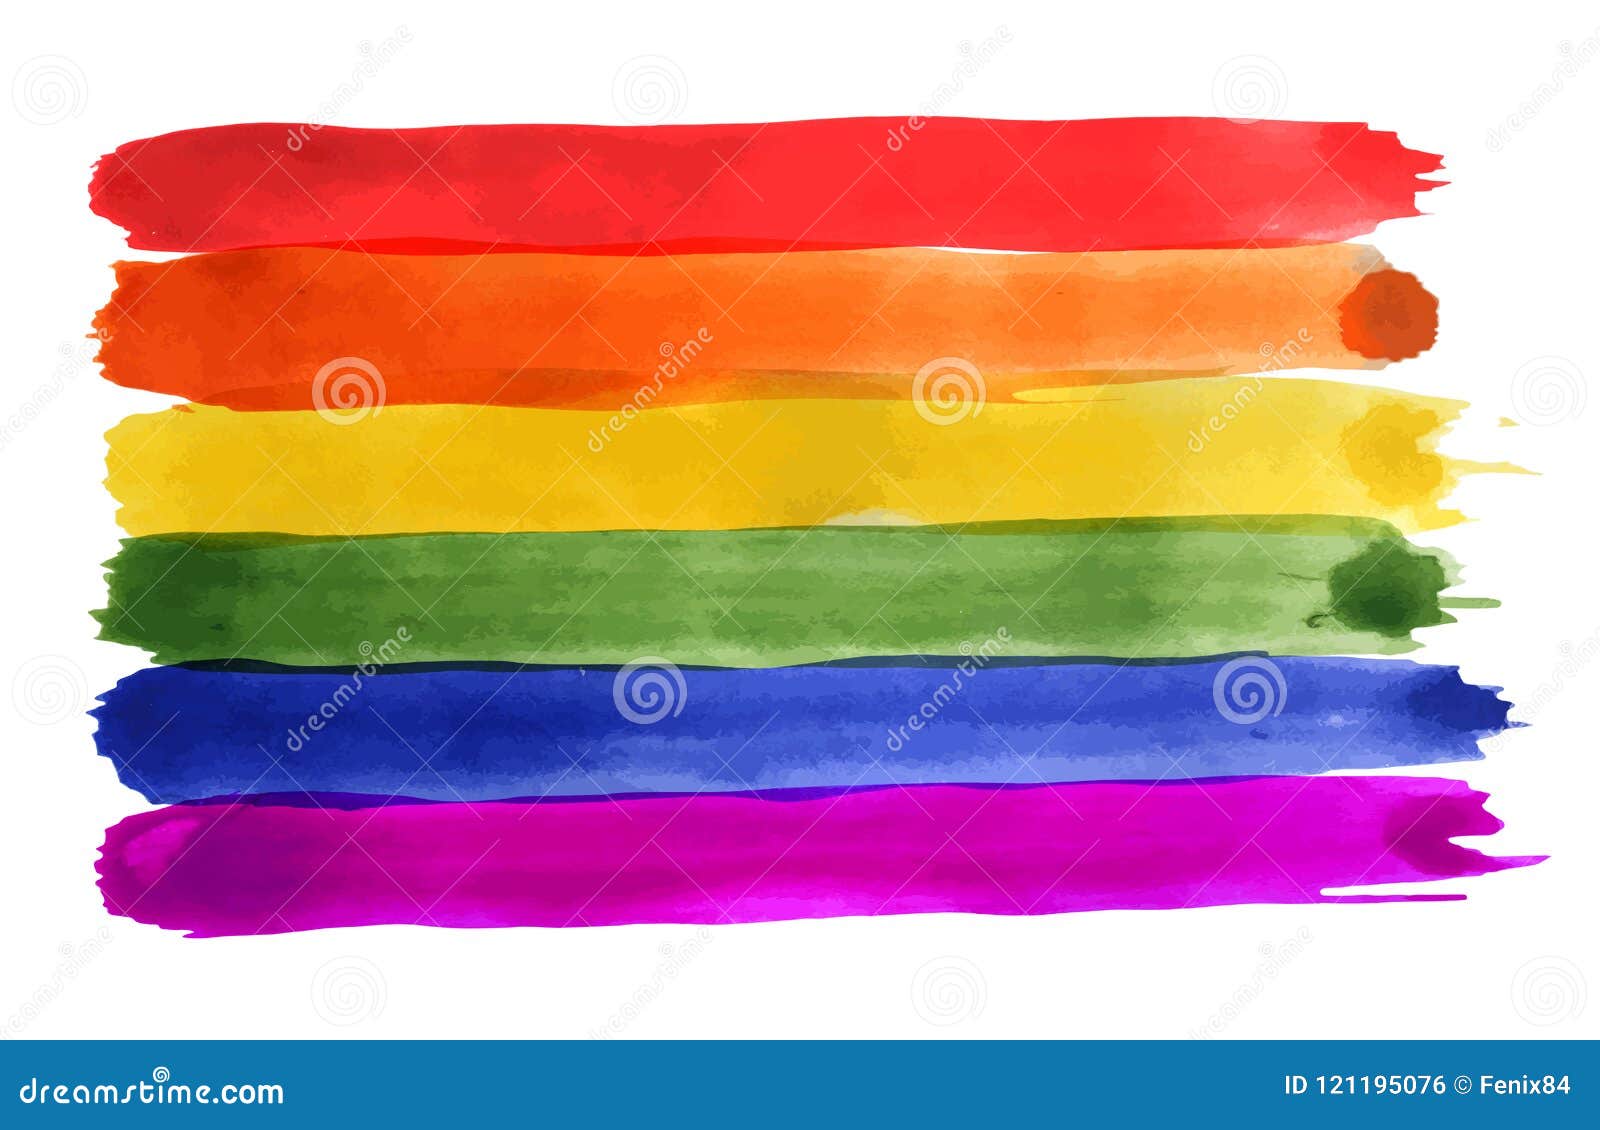 YongFoto 1,5x1m Vinilo Fondo de Fotografia Patrón de la Bandera del Arco Iris del Orgullo Gay Superficie de Madera resistida Textura Telón de Fondo Photo Booth Infantil Party Niños Photo Studio Props